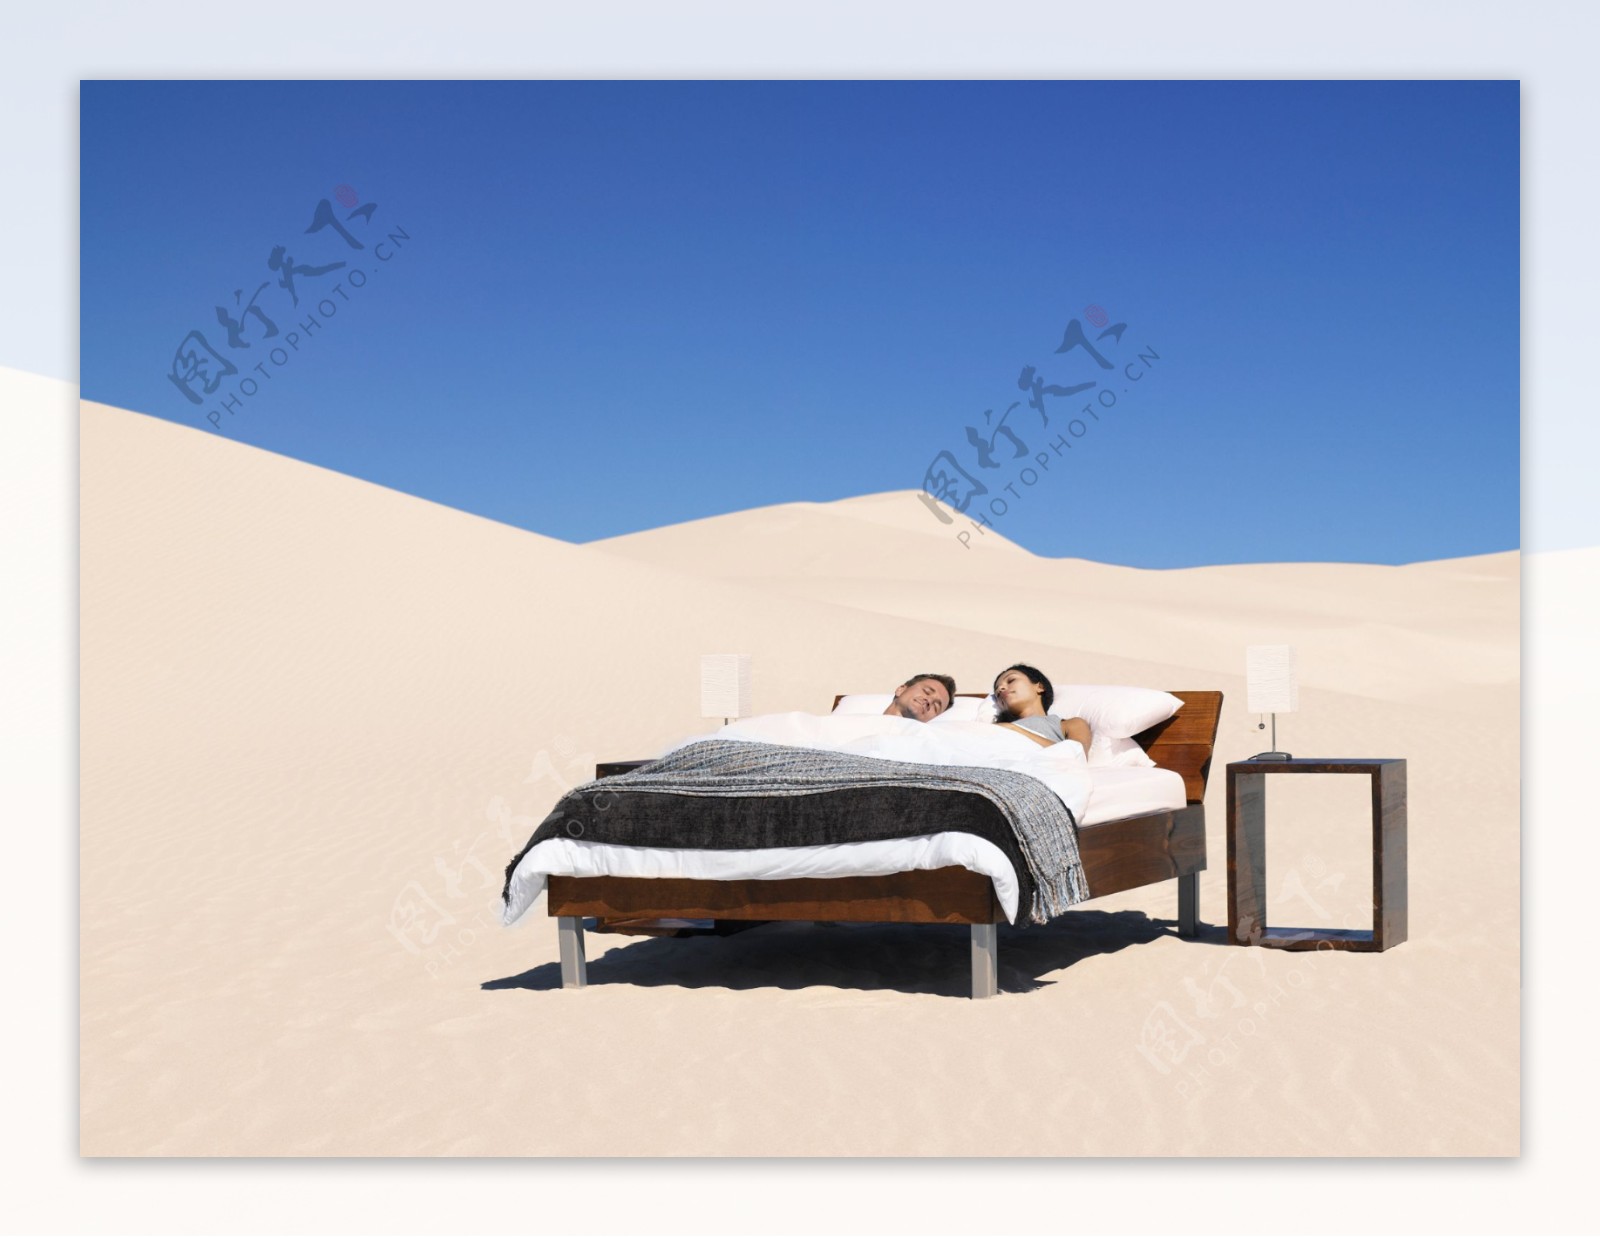 沙漠上睡觉的职业人物图片